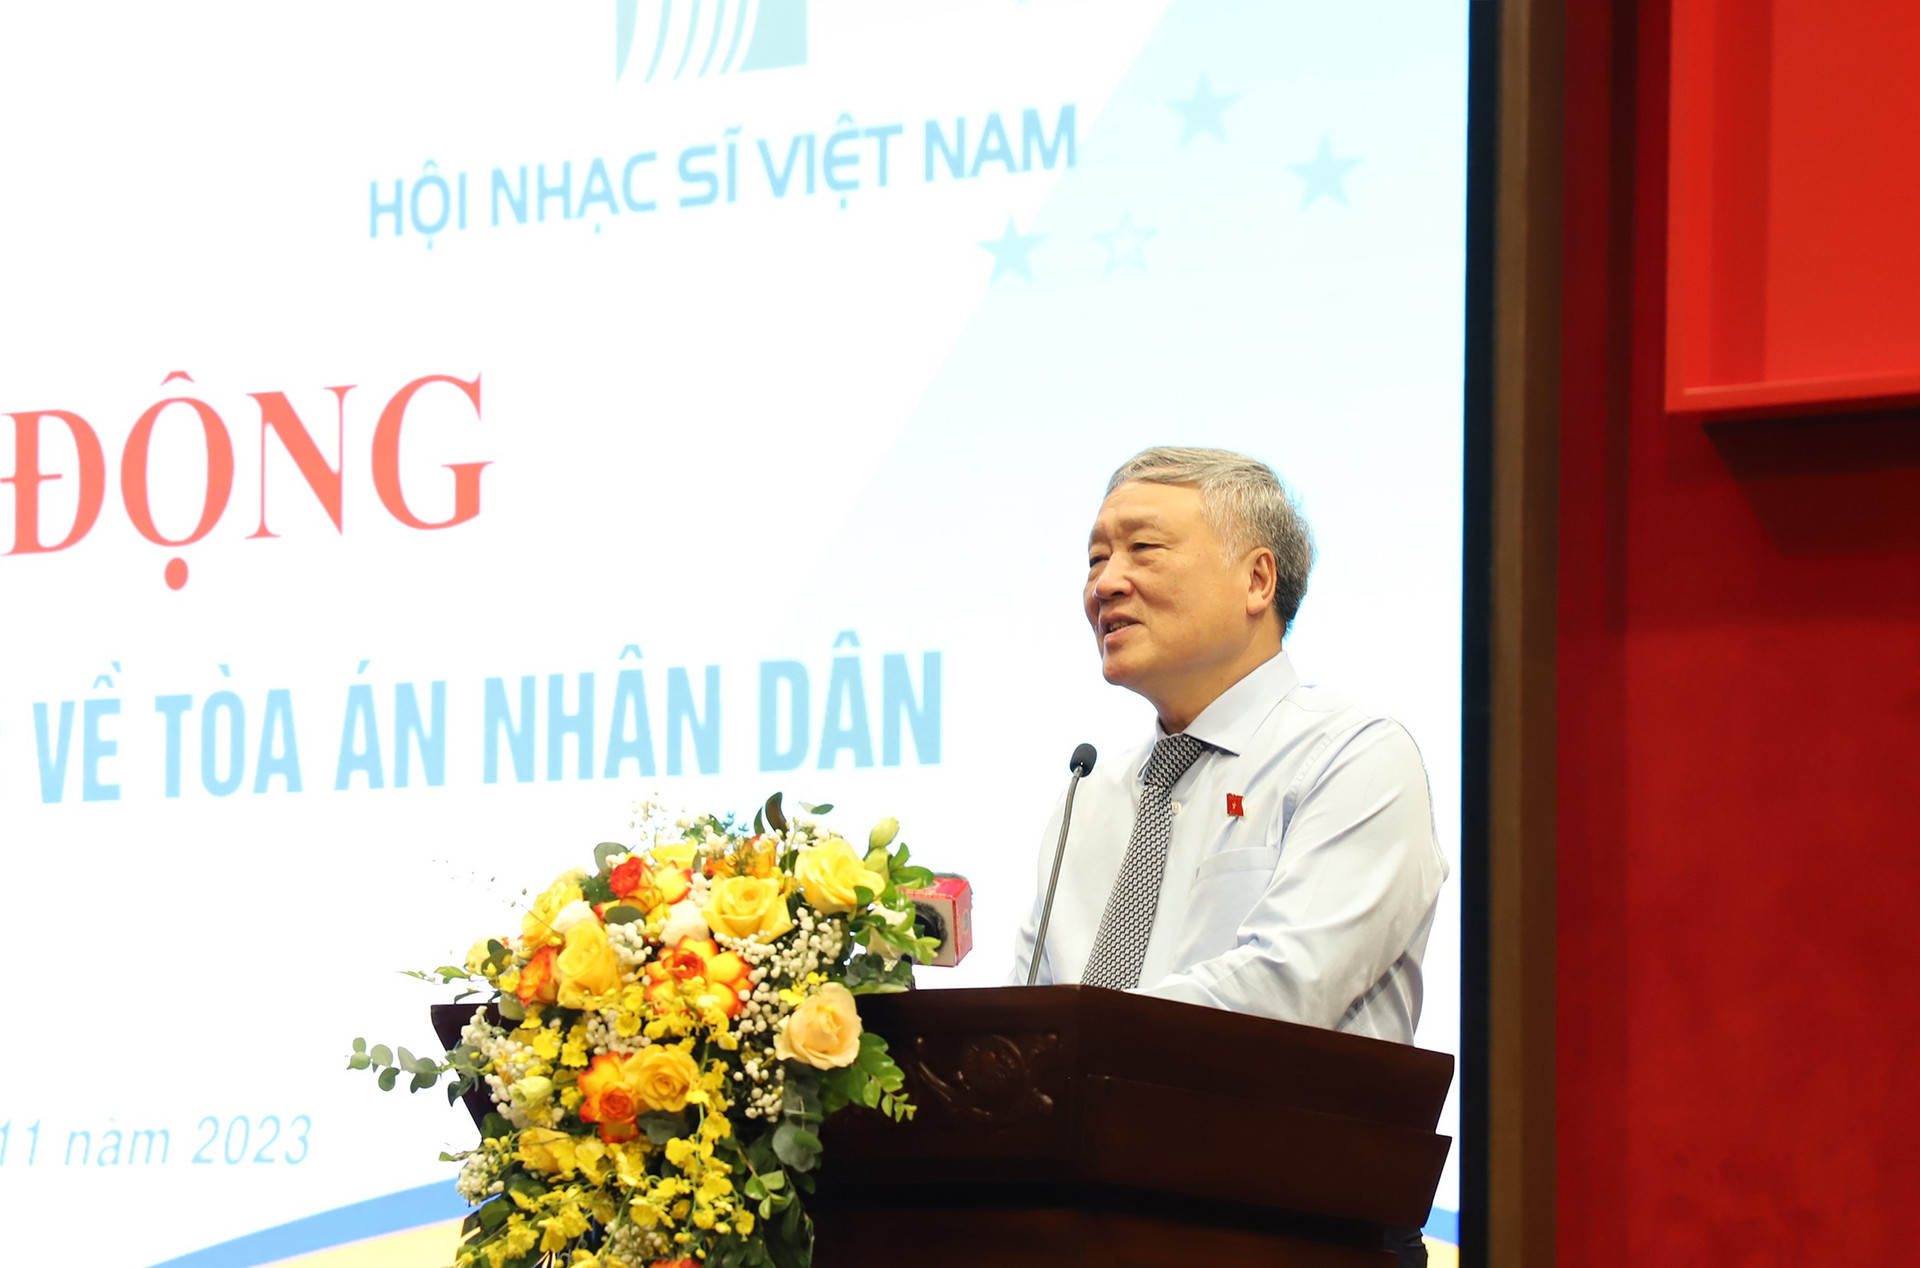 Ông Nguyễn Hòa Bình, Ủy viên Bộ Chính trị, Bí thư Trung ương đảng, Bí thư Ban cán sự đảng, Chánh án TAND